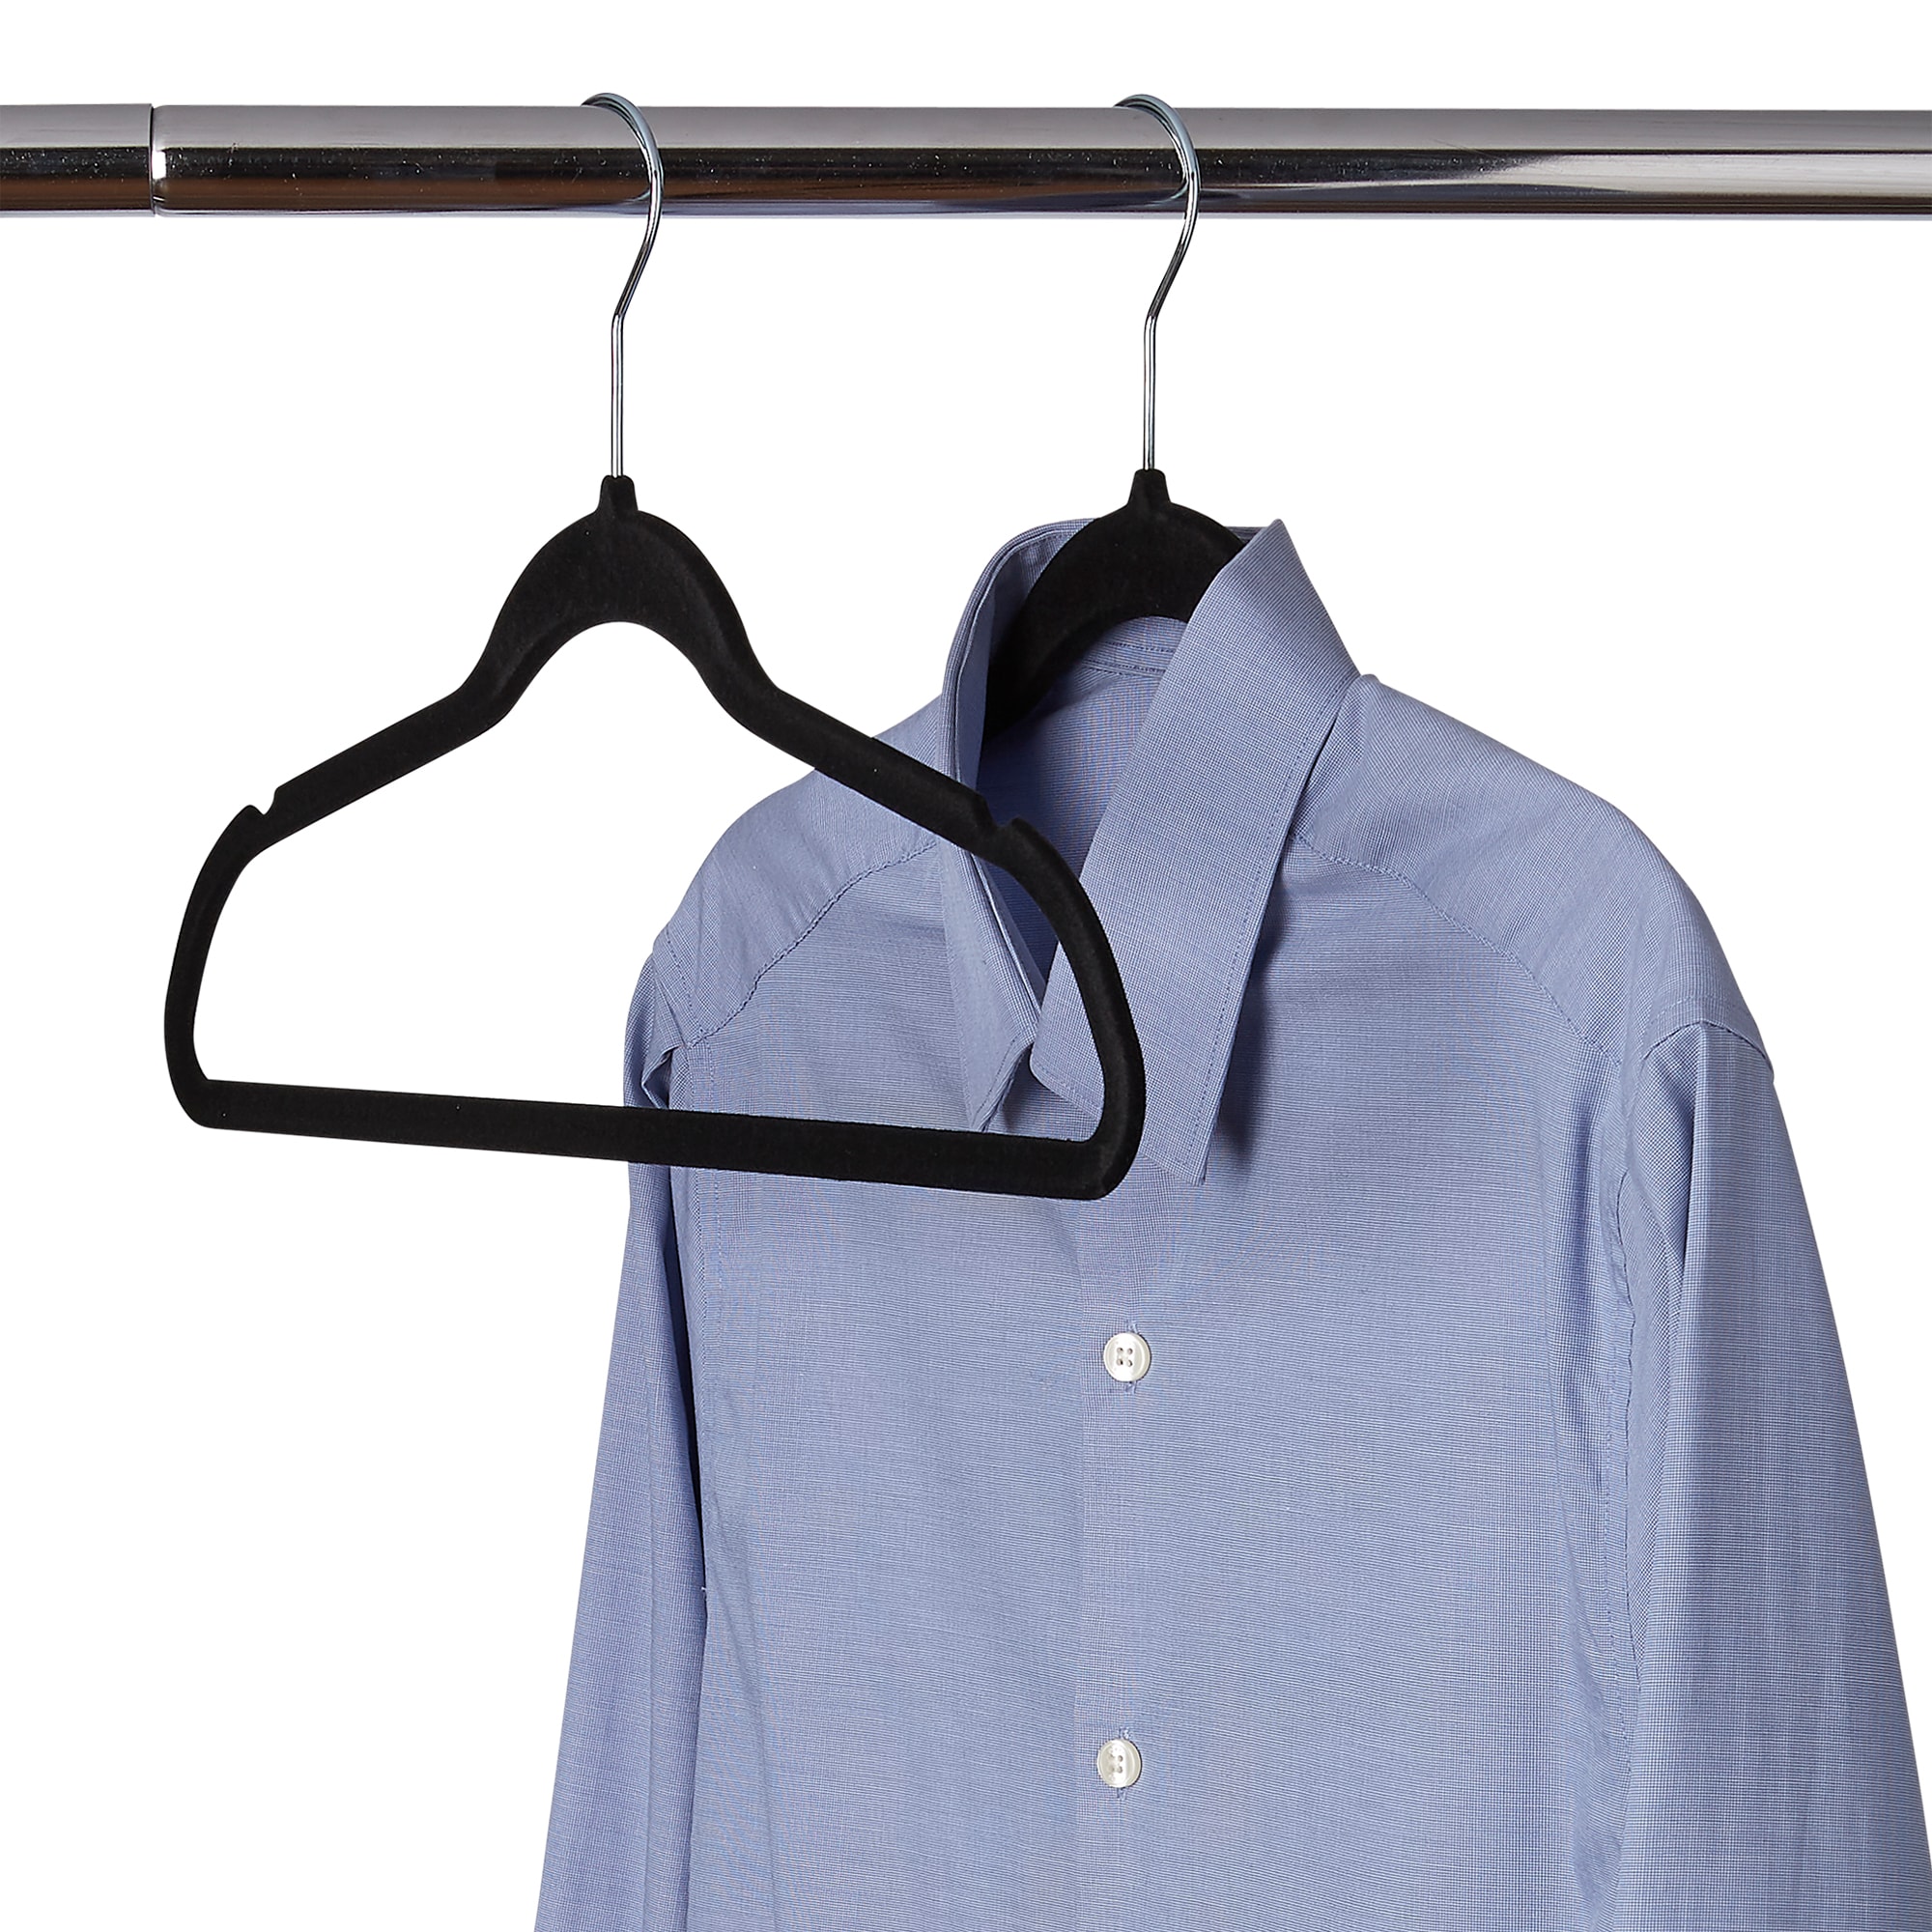 neatfreak 10-Pack Plastic Non-slip Grip Clothing Hanger (White and Blue) at